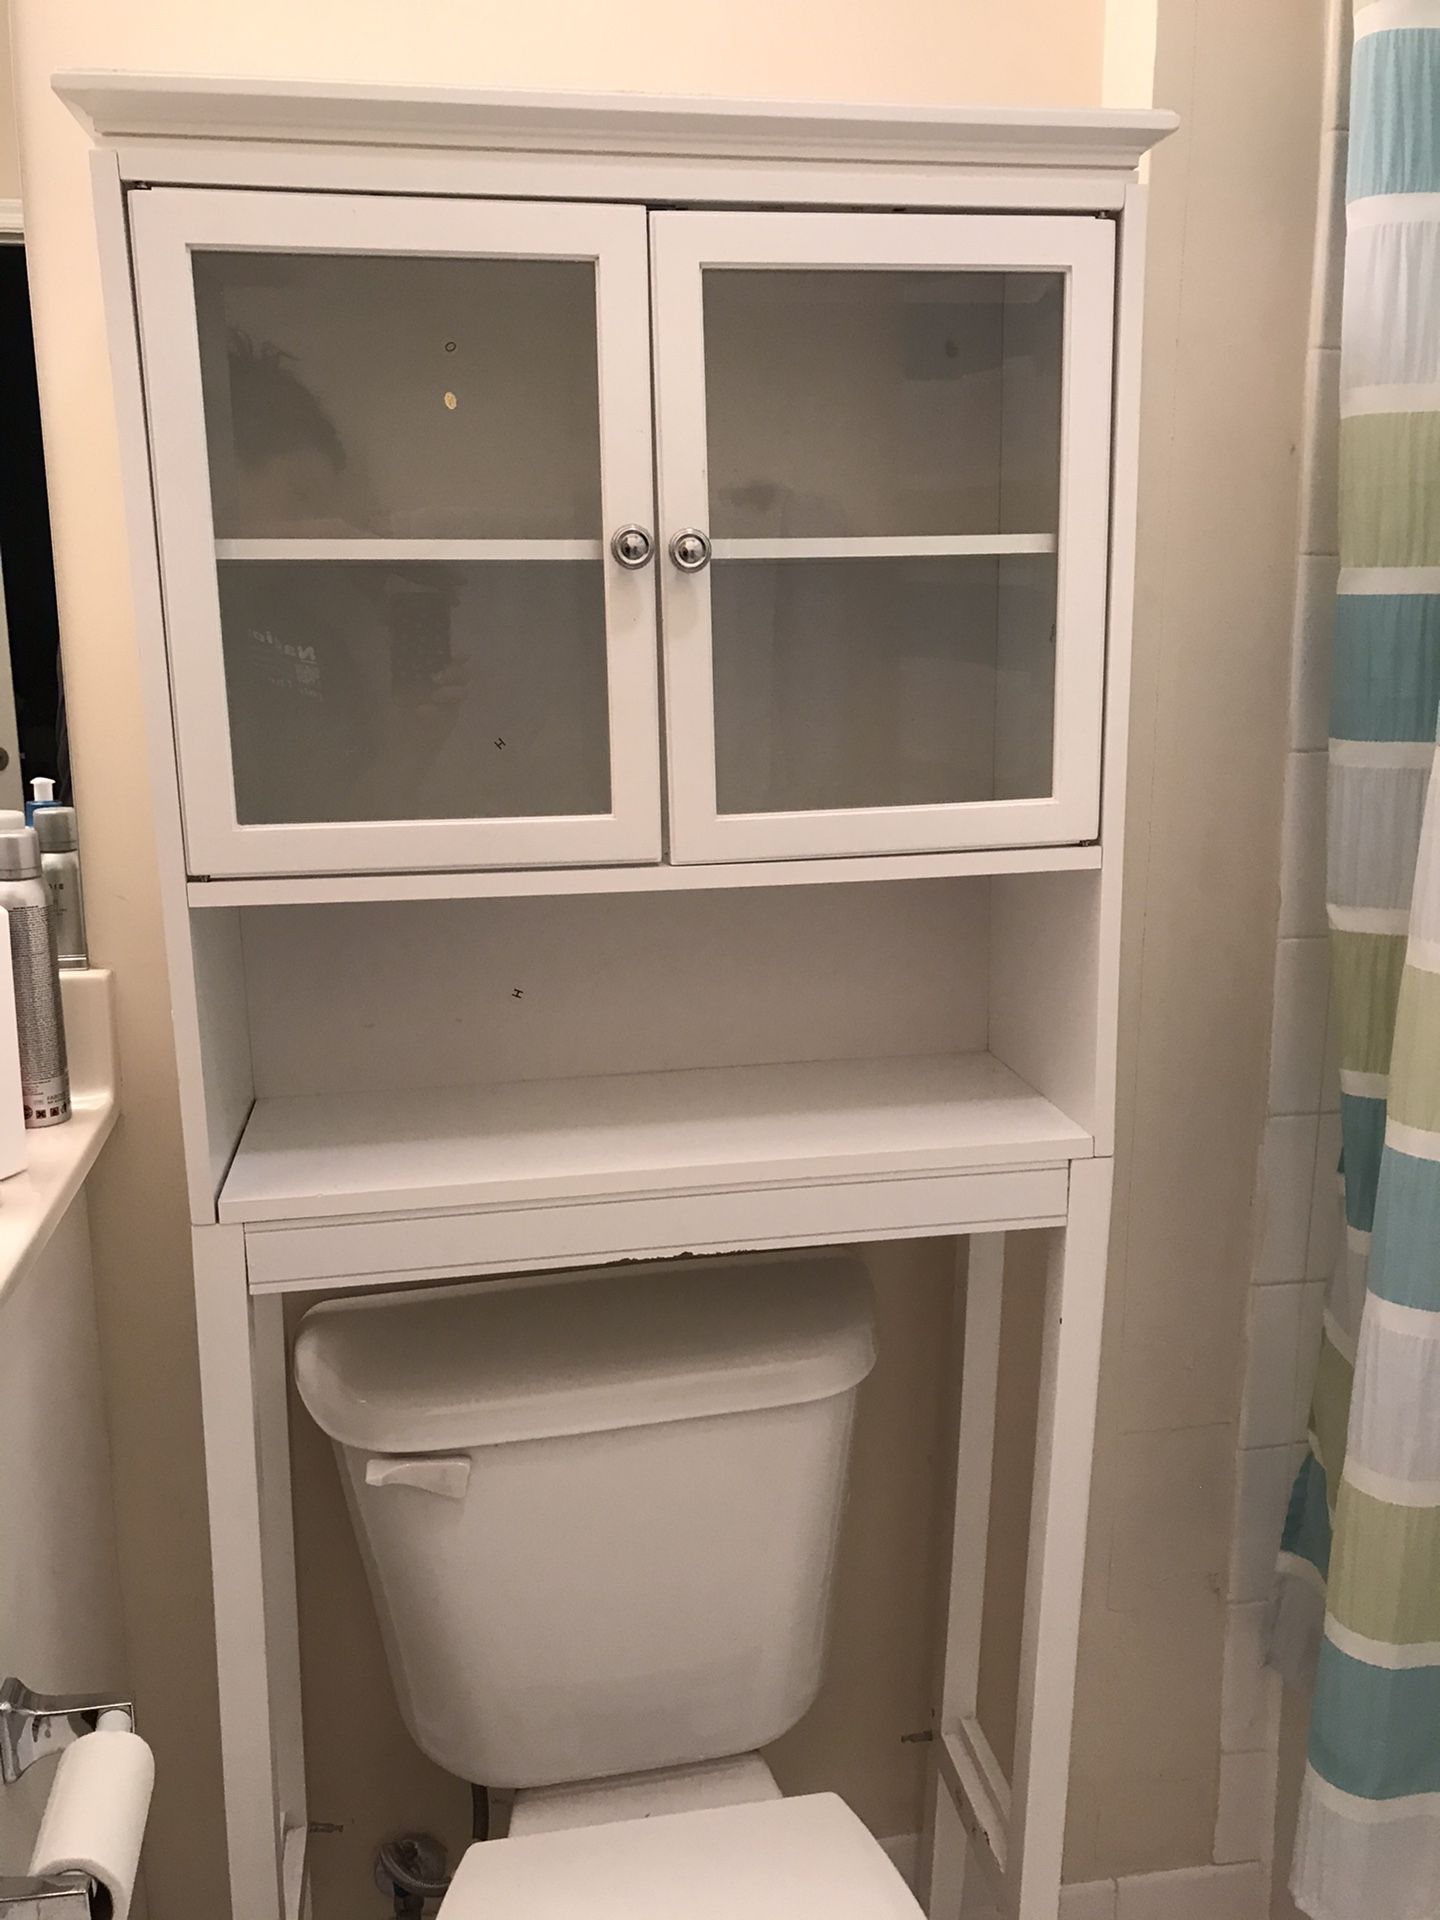 Over toilet storage - white